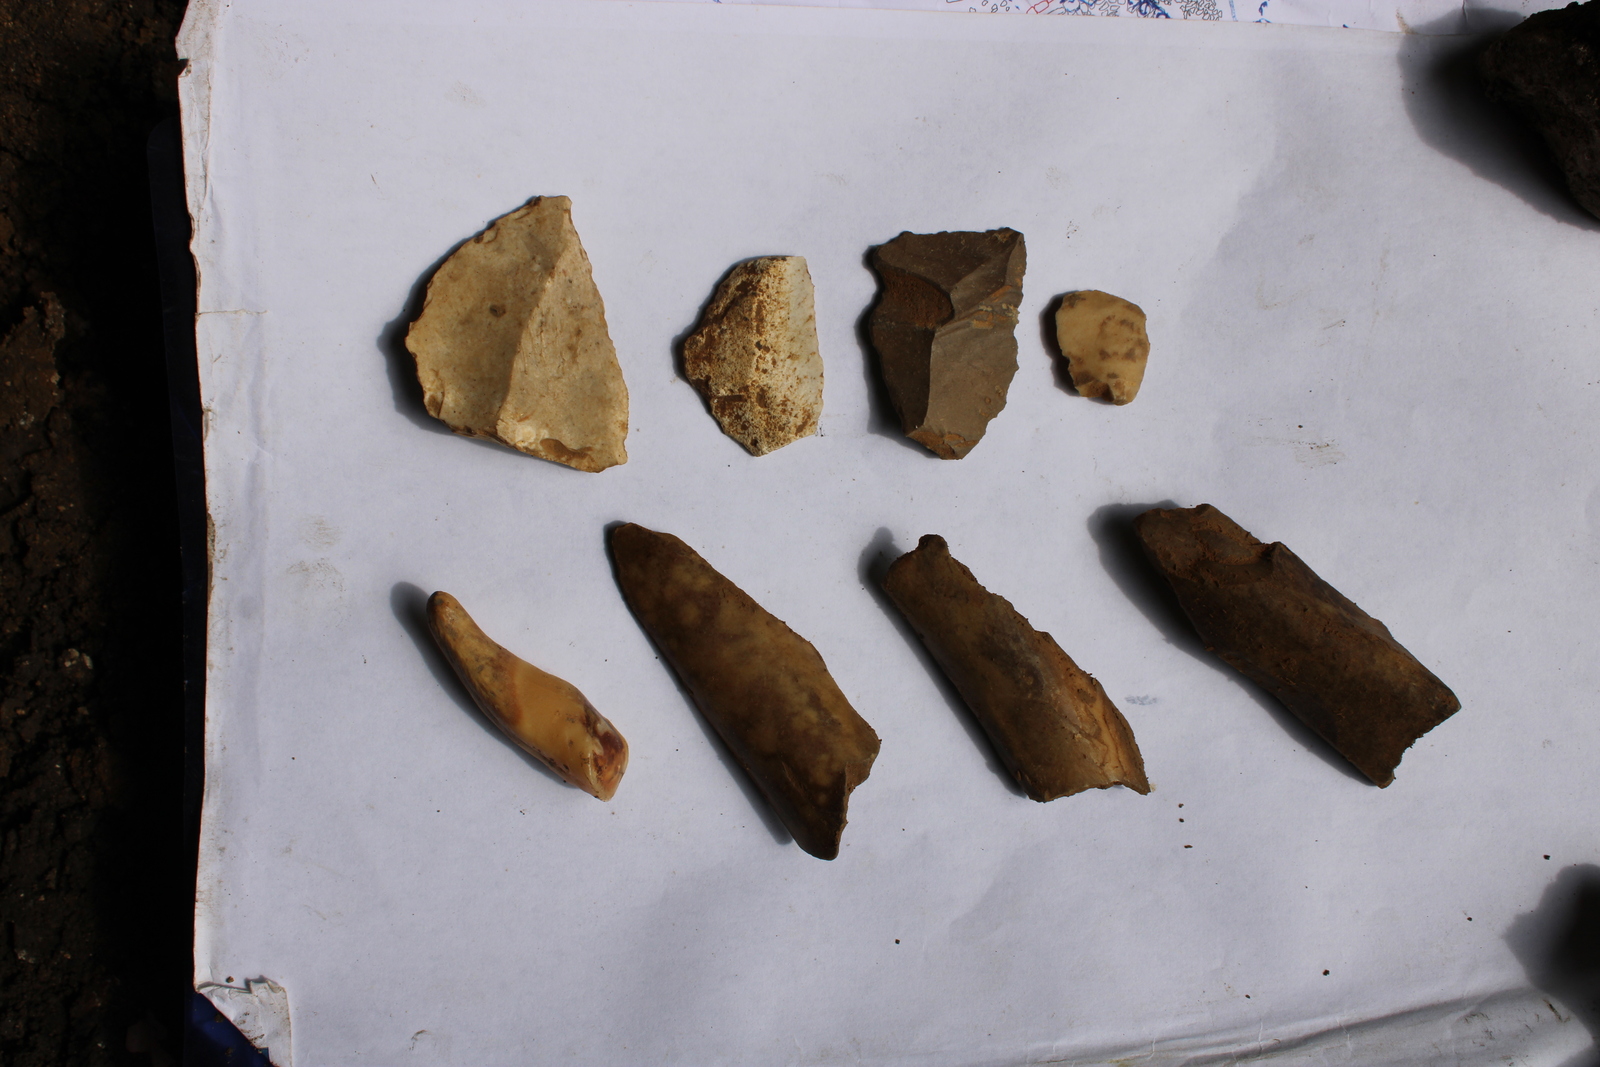 Kobazuloan aurkitutako Moustier aldiko piezak, neandertalek landutakoak. (ARANZADI)